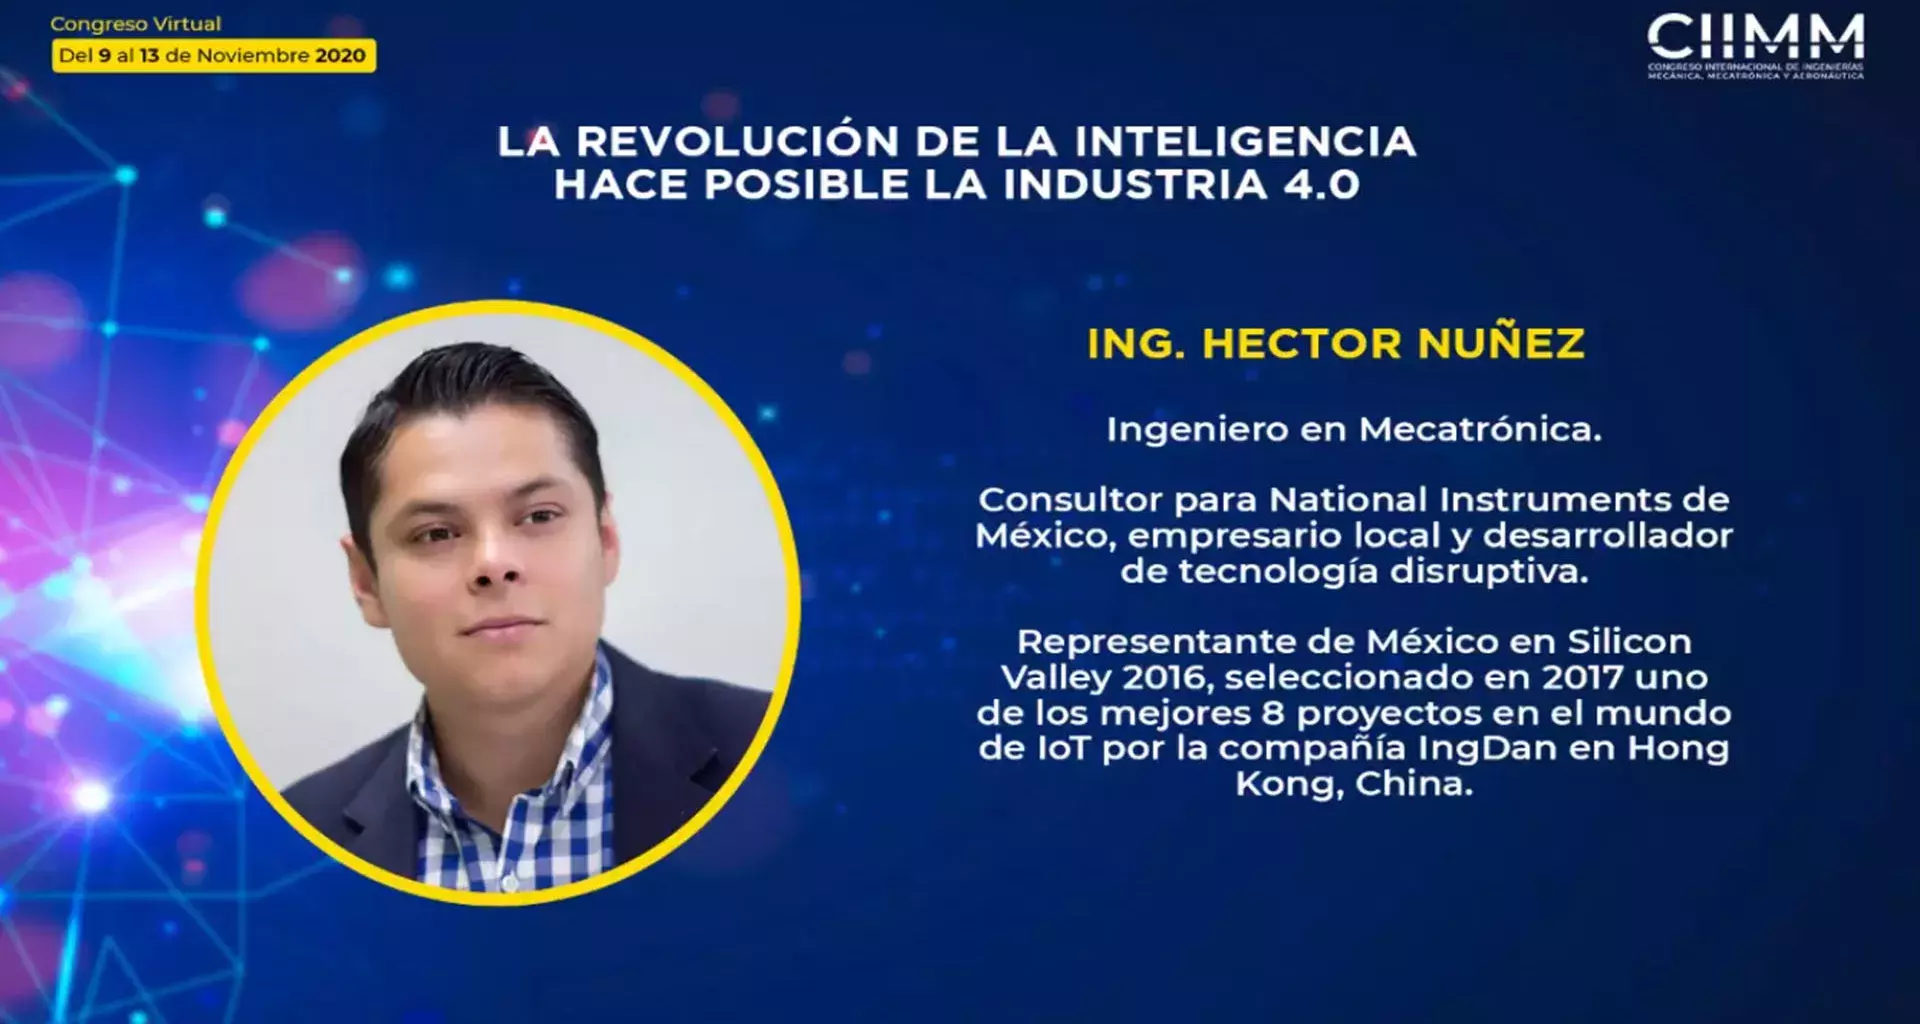 Anuncio de la conferencia de Héctor Núñez.